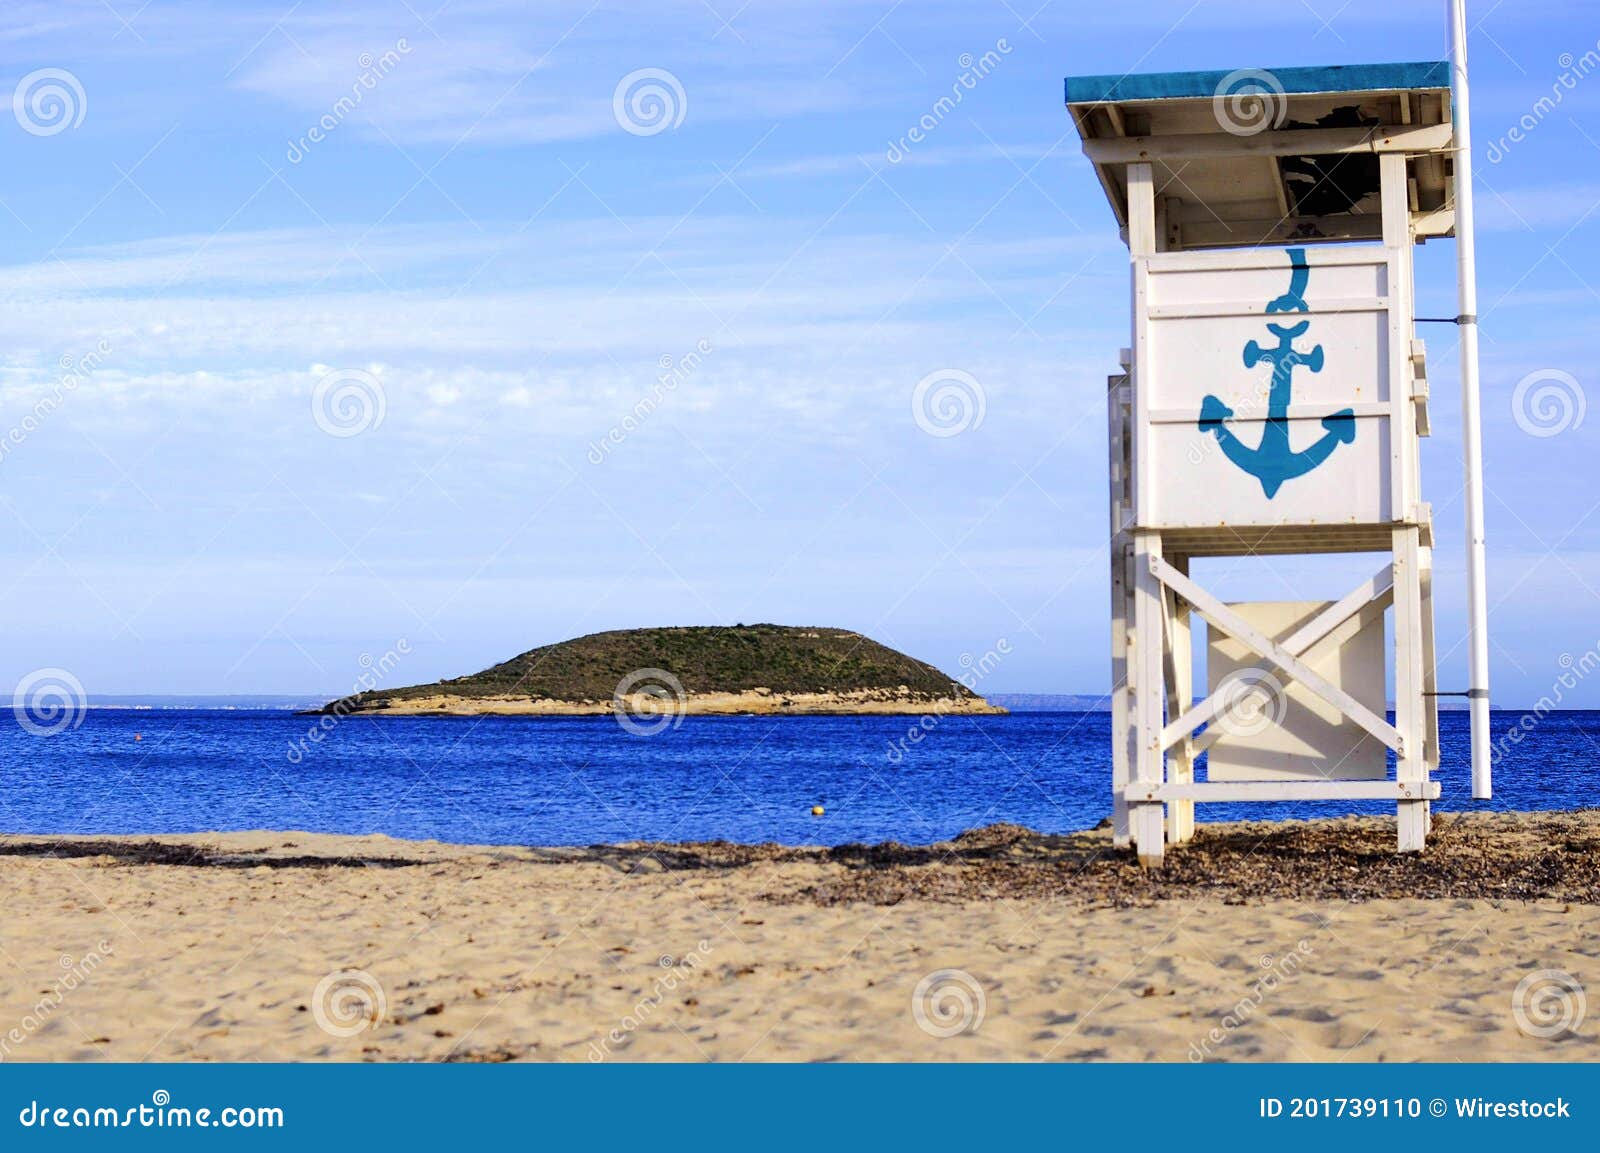 white lifeguard chair with a blue anchor on the isla de sa porrassa in mallorca